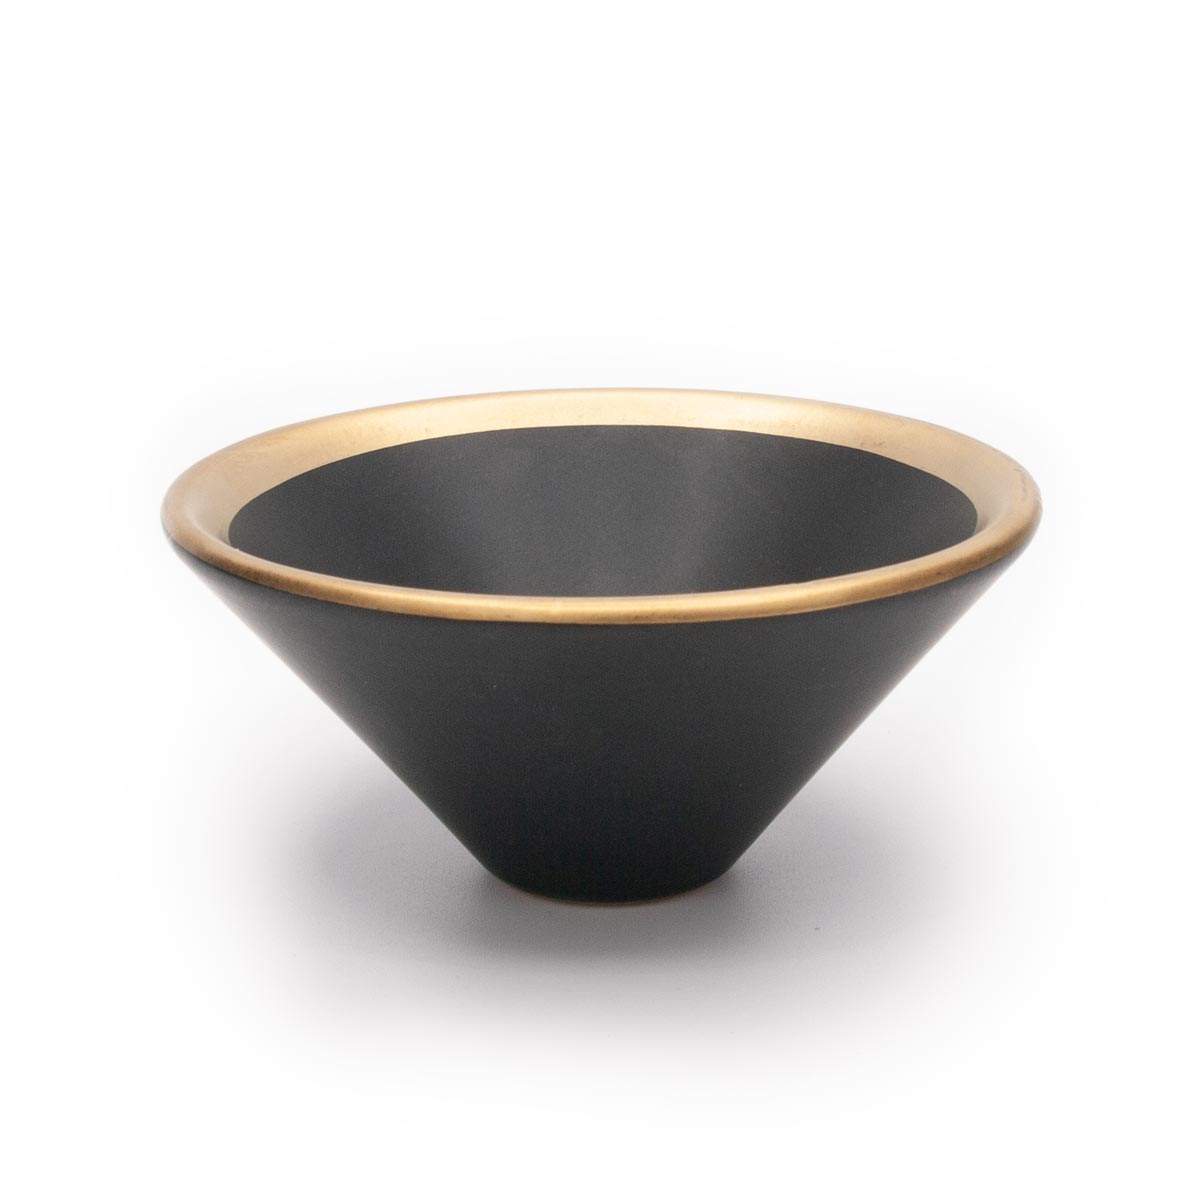 Räucherschale aus Keramik schwarz/gold